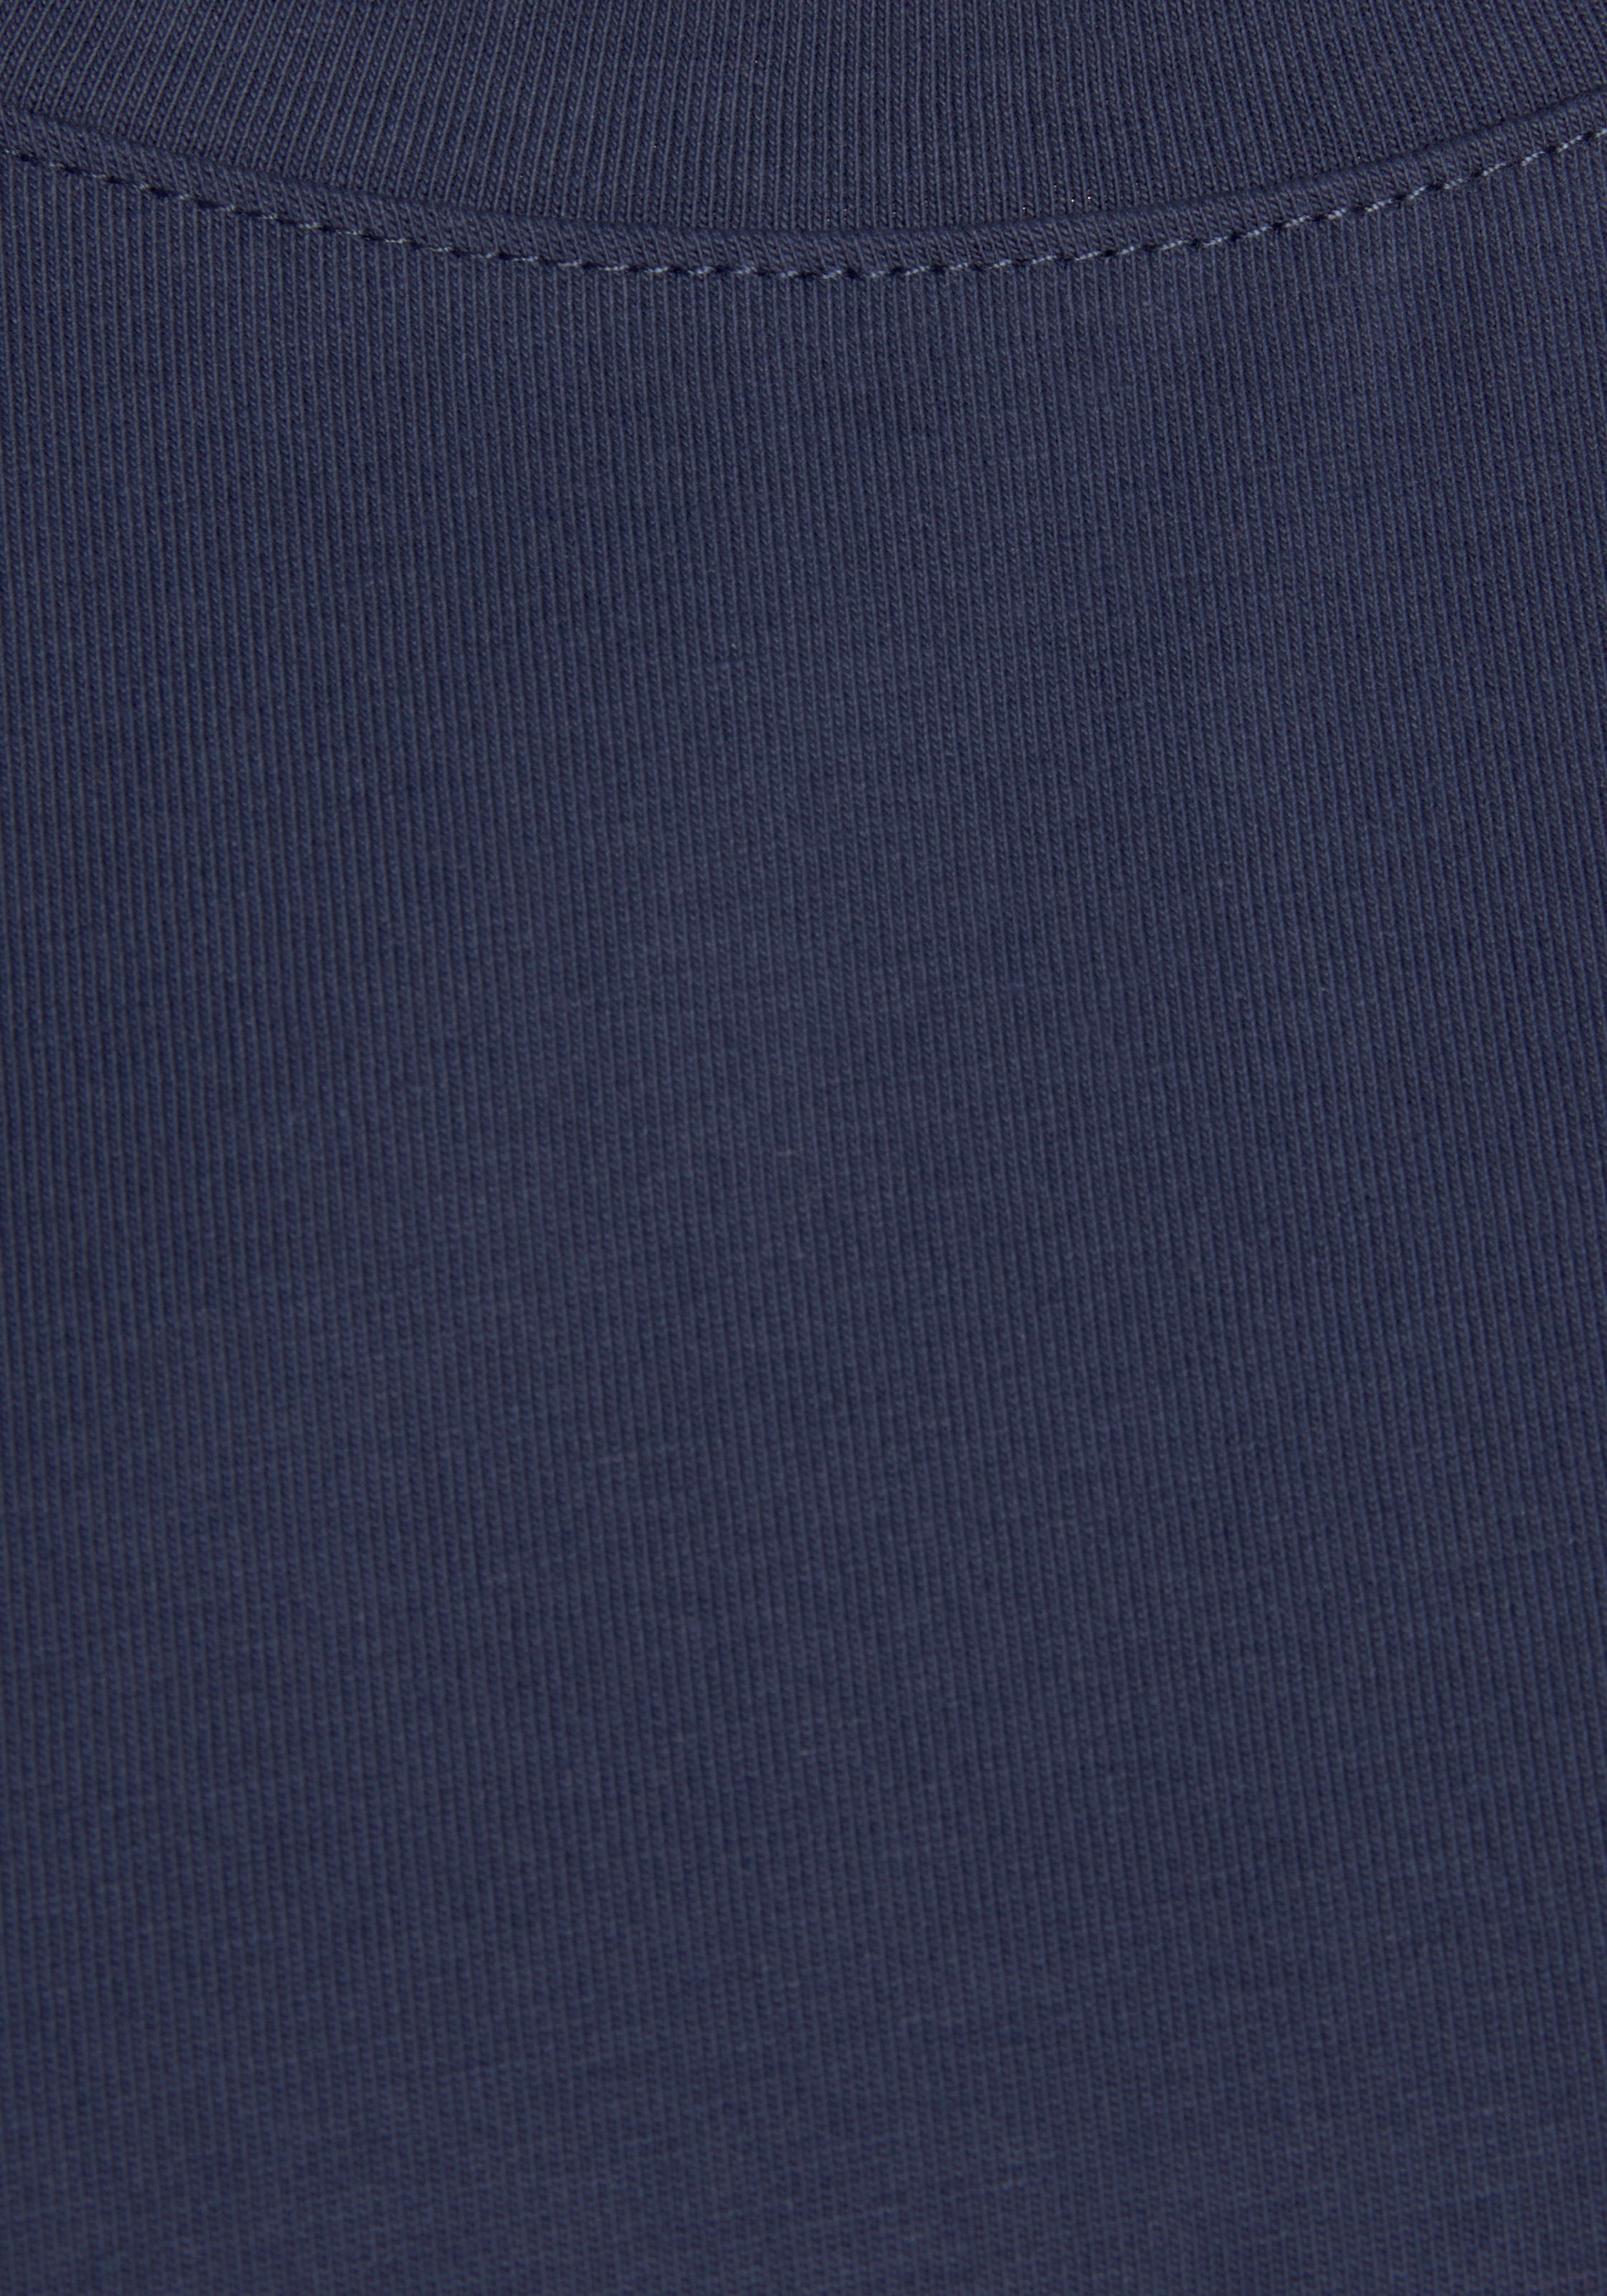 Ärmelaufschlag Stil, mit H.I.S T-Shirt navy im maritimen Loungewear